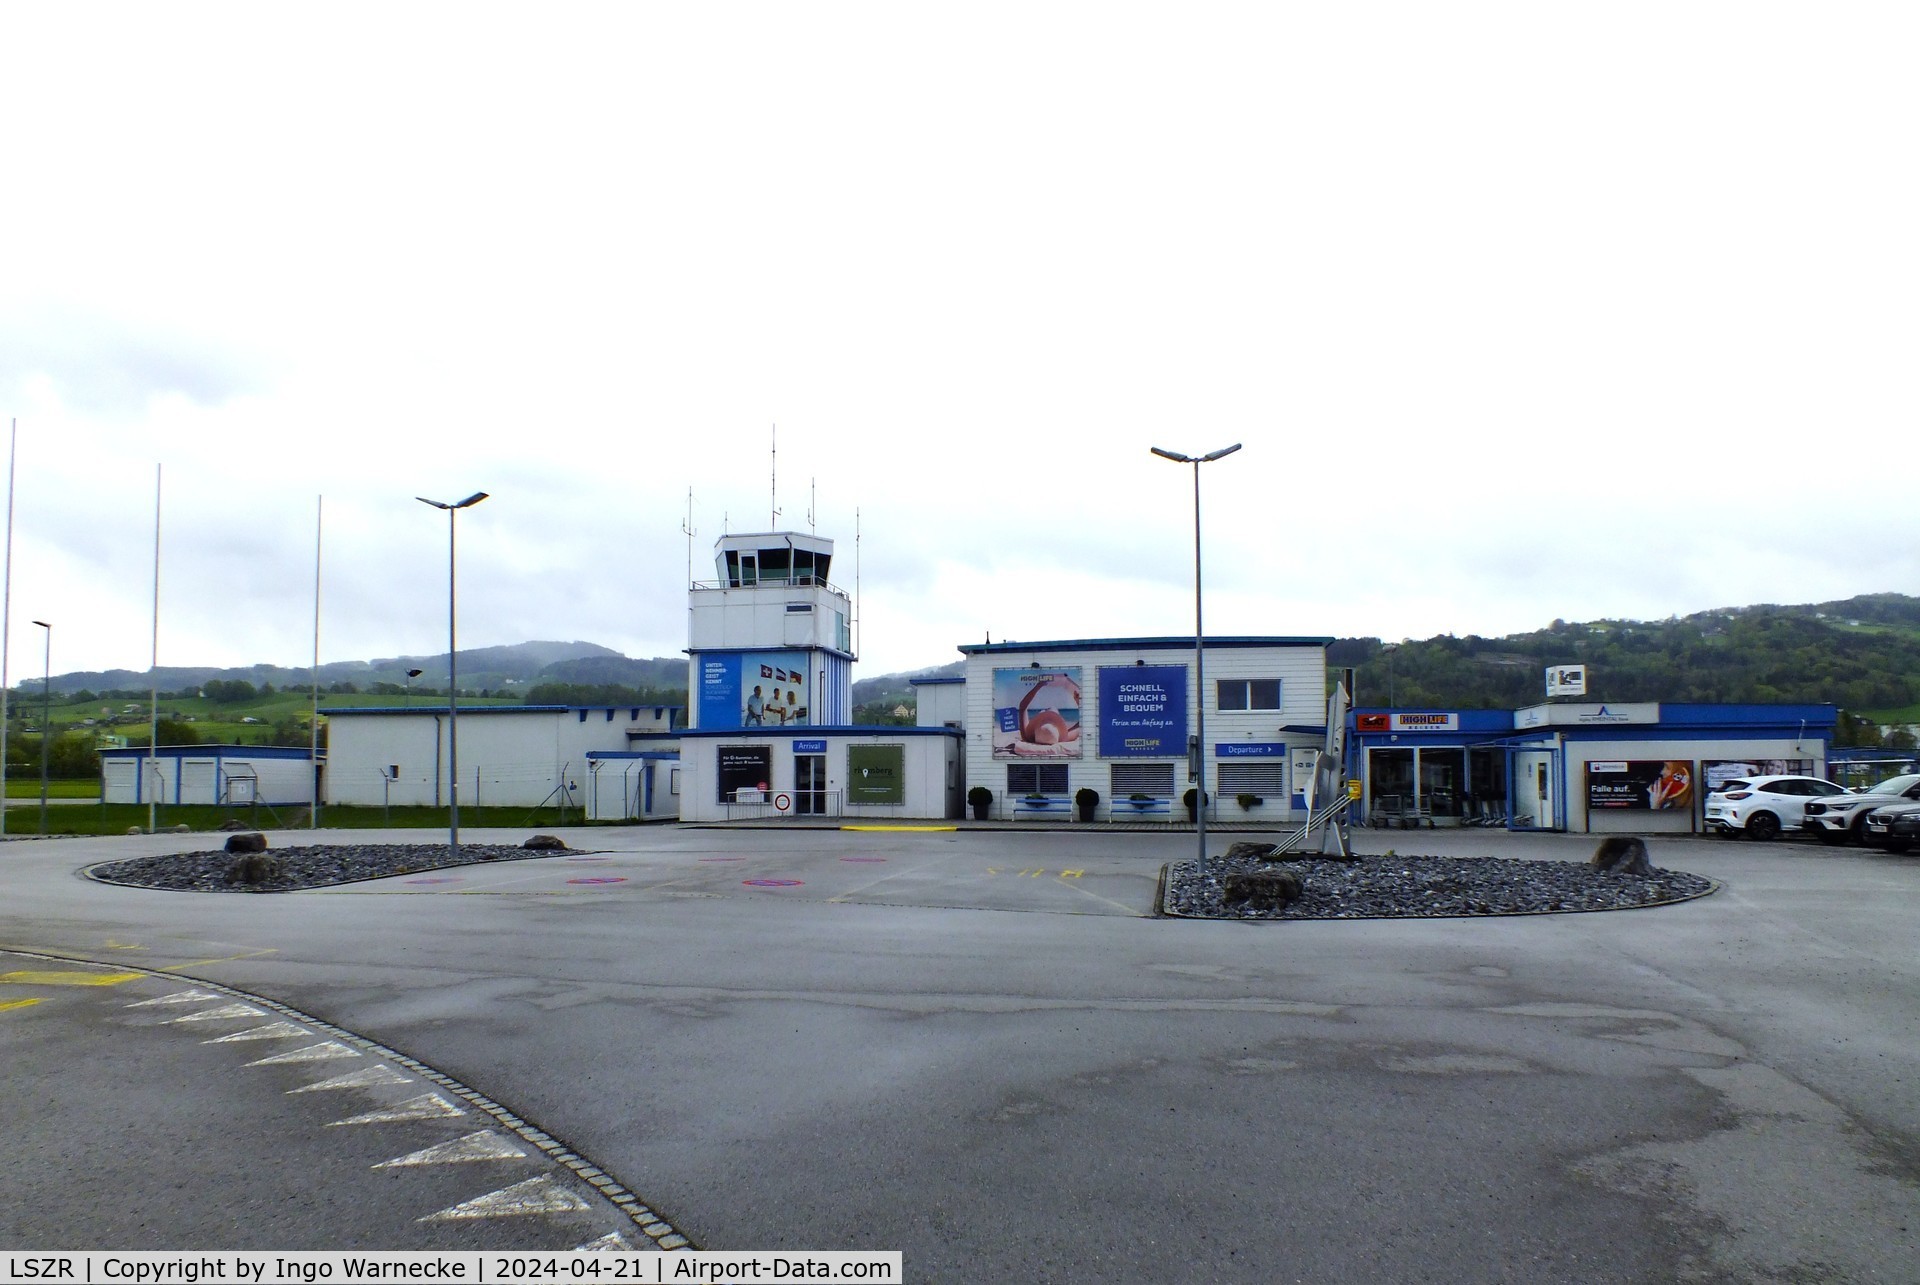 St. Gallen-Altenrhein Airport, Altenrhein Switzerland (LSZR) - landside view of terminal and tower at St.Gallen-Altenrhein airport